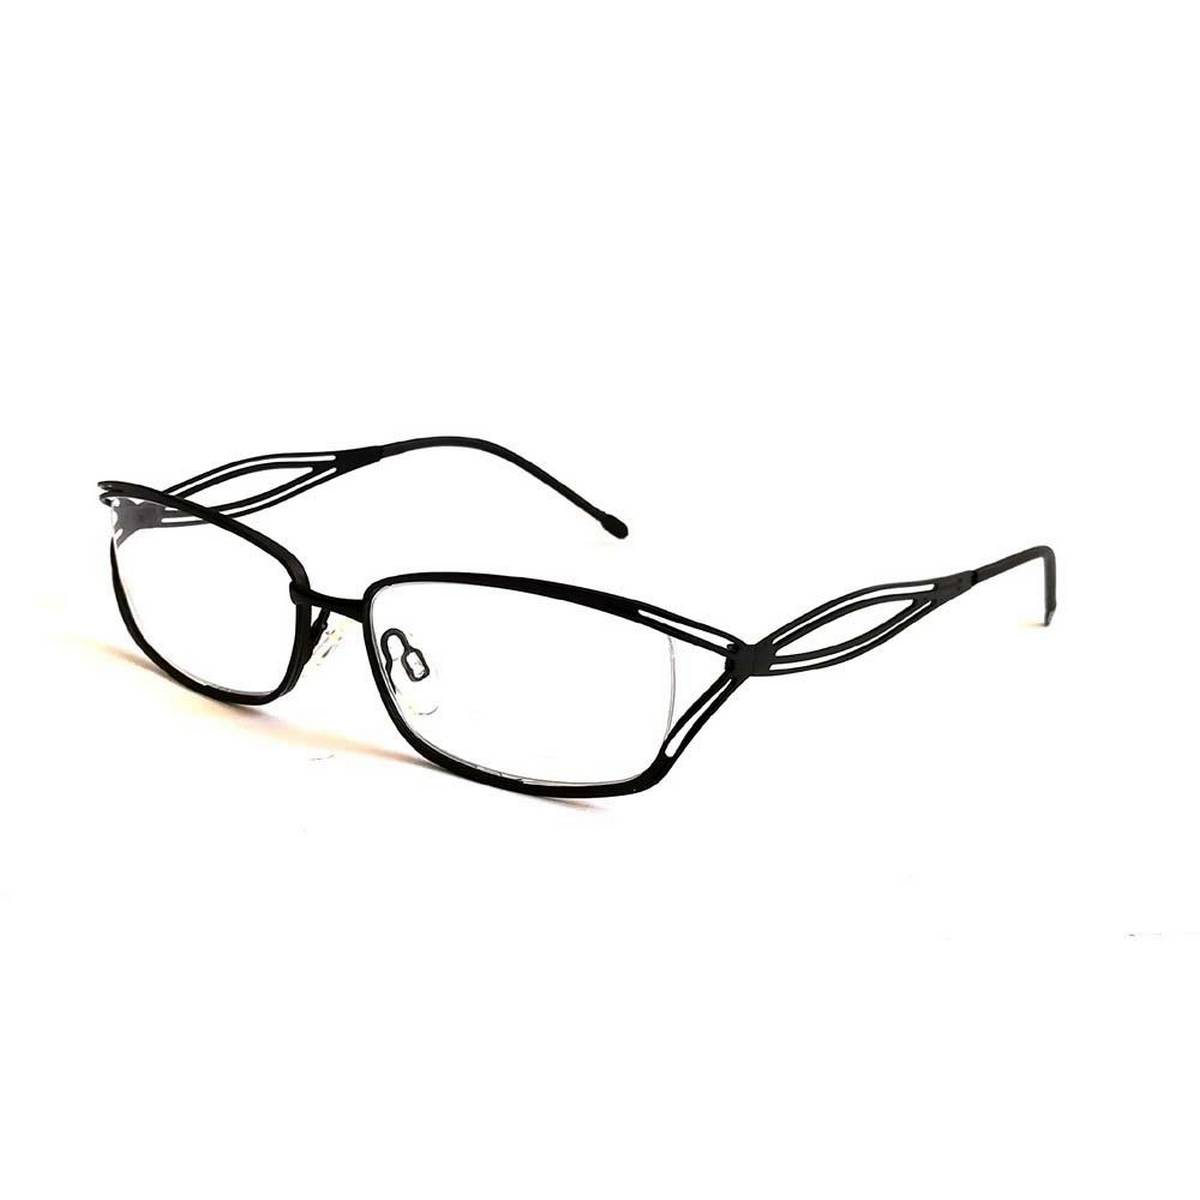 Rangeen Eyesight/optical Frame Glasses +1.00/+1.25/1.75/+2.00/+2.25/+2.75/+3.00/+3.25/+3.50/+3.75